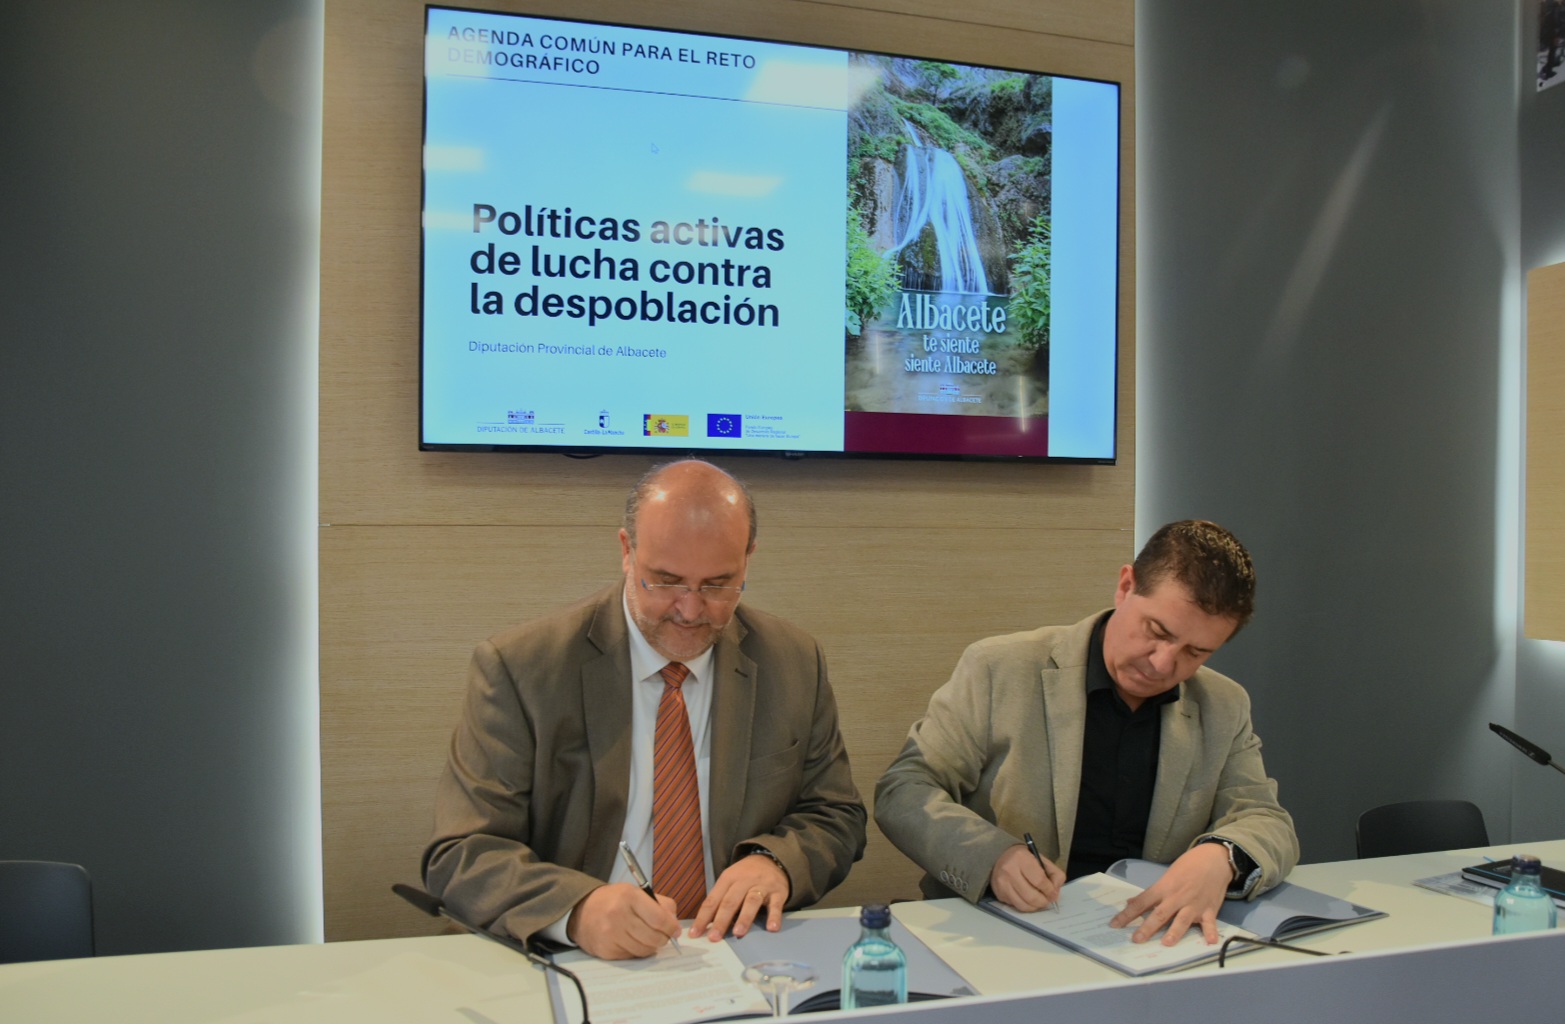 El presidente provincial de Albacete y el vicepresidente regional firman el protocolo para una Agenda Común en materia de Reto Demográfico.